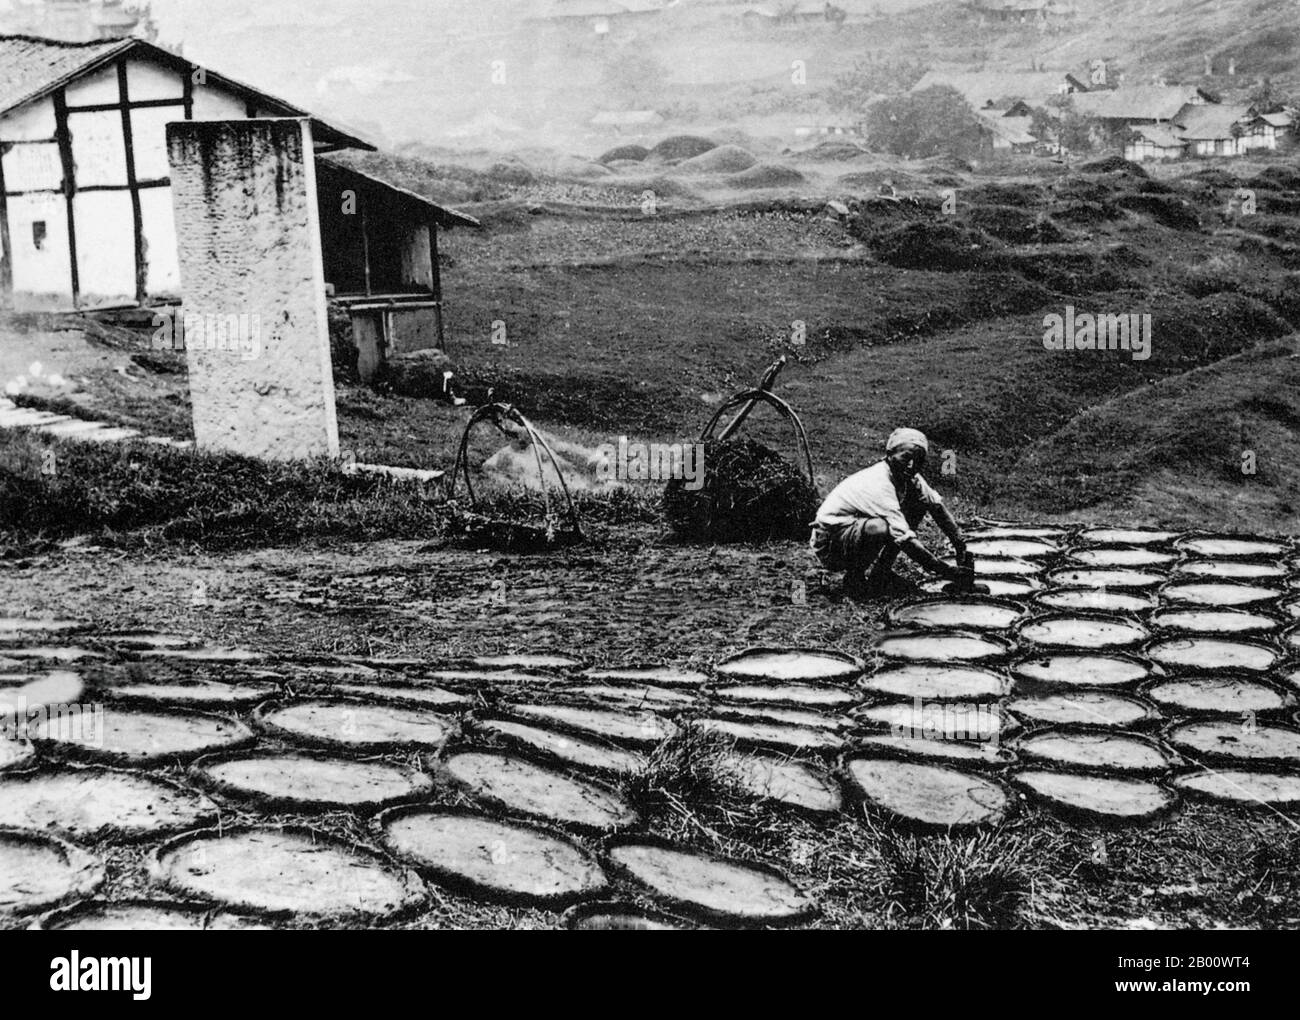 Tibet/Cina: Un agricoltore tibetano nella città di Atentze stende il letame di yak da asciugare prima di essere utilizzato come carburante; fotografato nel 1900. I tibetani rurali spesso raccolgono sterco di yak ogni giorno dai sentieri per asciugarsi e utilizzare come carburante per gli incendi. La gente di Sherpa conta sulle piccole stufe di ferro per riscaldare le loro case e per cucinare nelle loro cucine. Al di sopra di una certa altitudine non c'è legno da trovare, e il governo cinese ha posto strette restrizioni sul disboscamento nelle foreste protette dell'Himalaya. Foto Stock